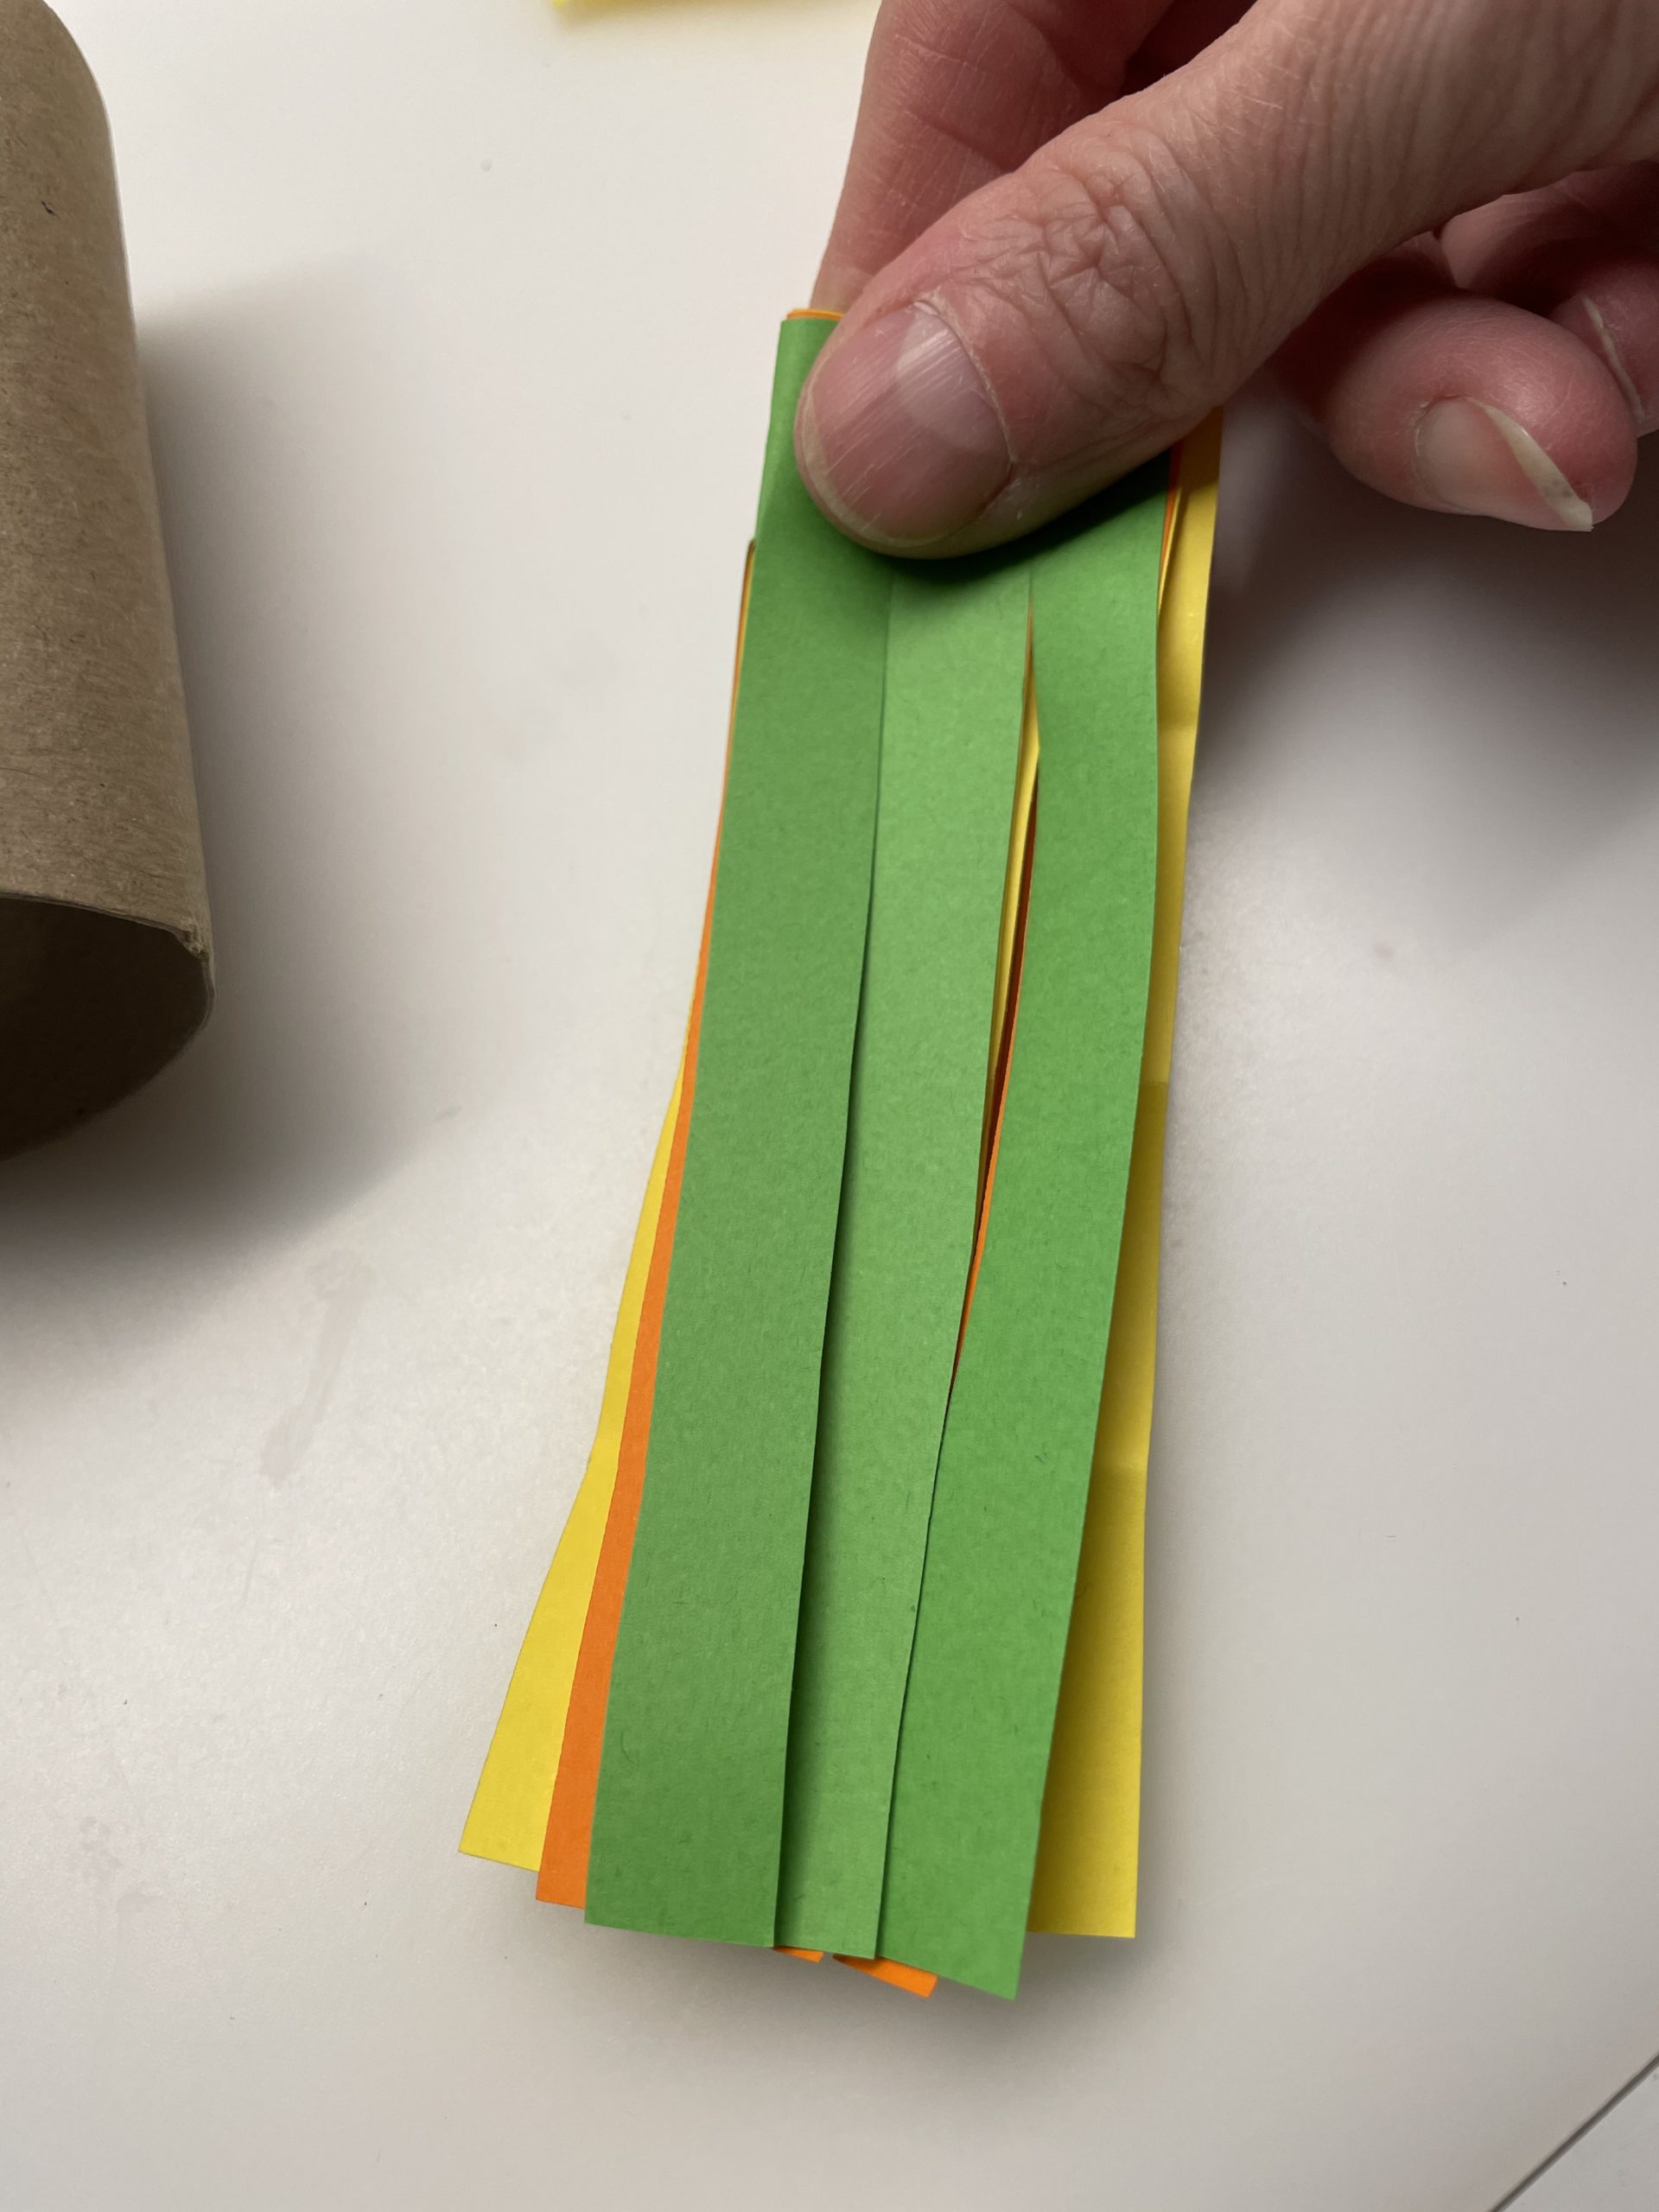 Bild zum Schritt 5 für das Bastel- und DIY-Abenteuer für Kinder: 'Faltet nun das geschnittene Papier der Länge nach zusammen.'